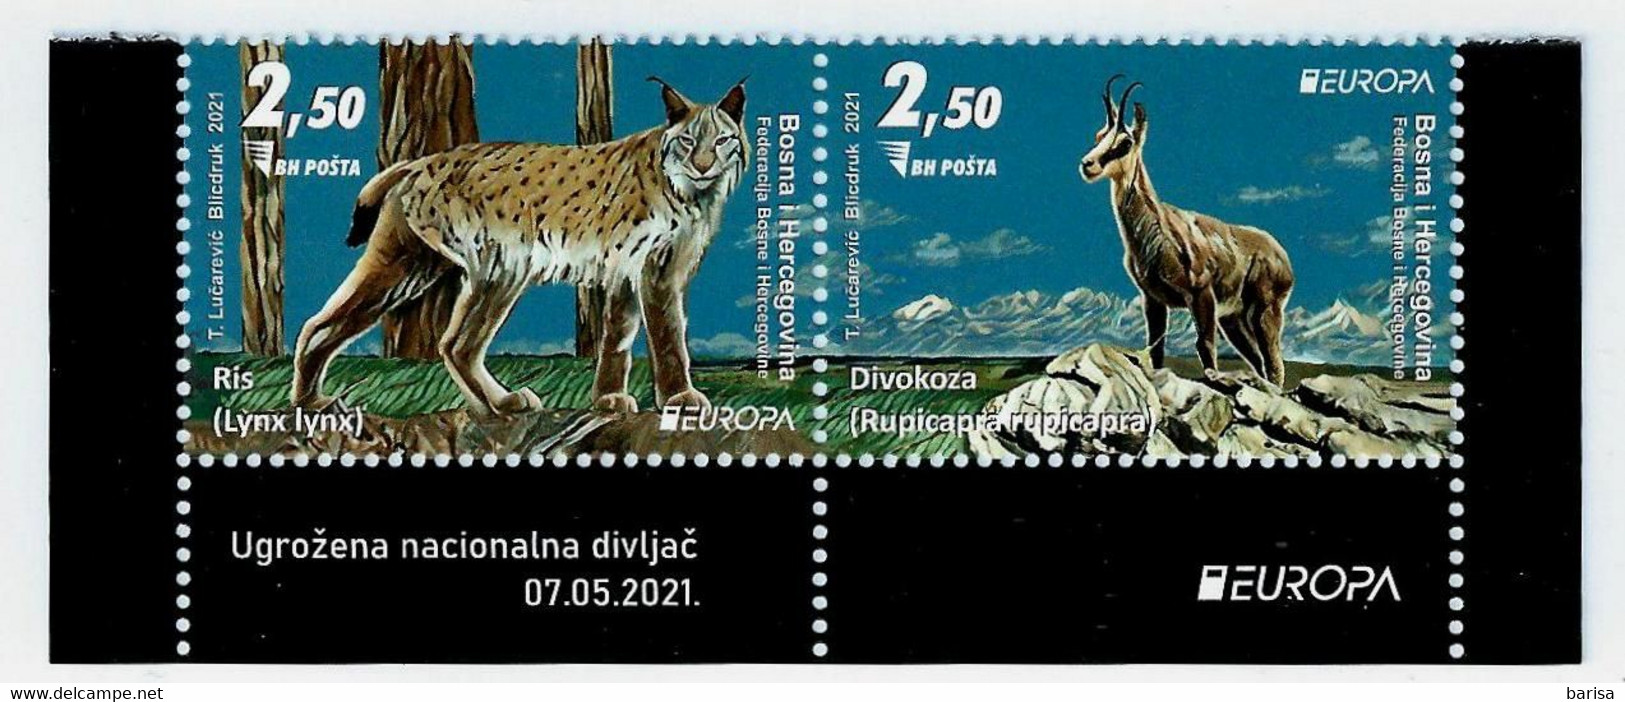 Bosnia And Herzegovina 2021: Europa - Endangered National Wildlife ** MNH - 2021